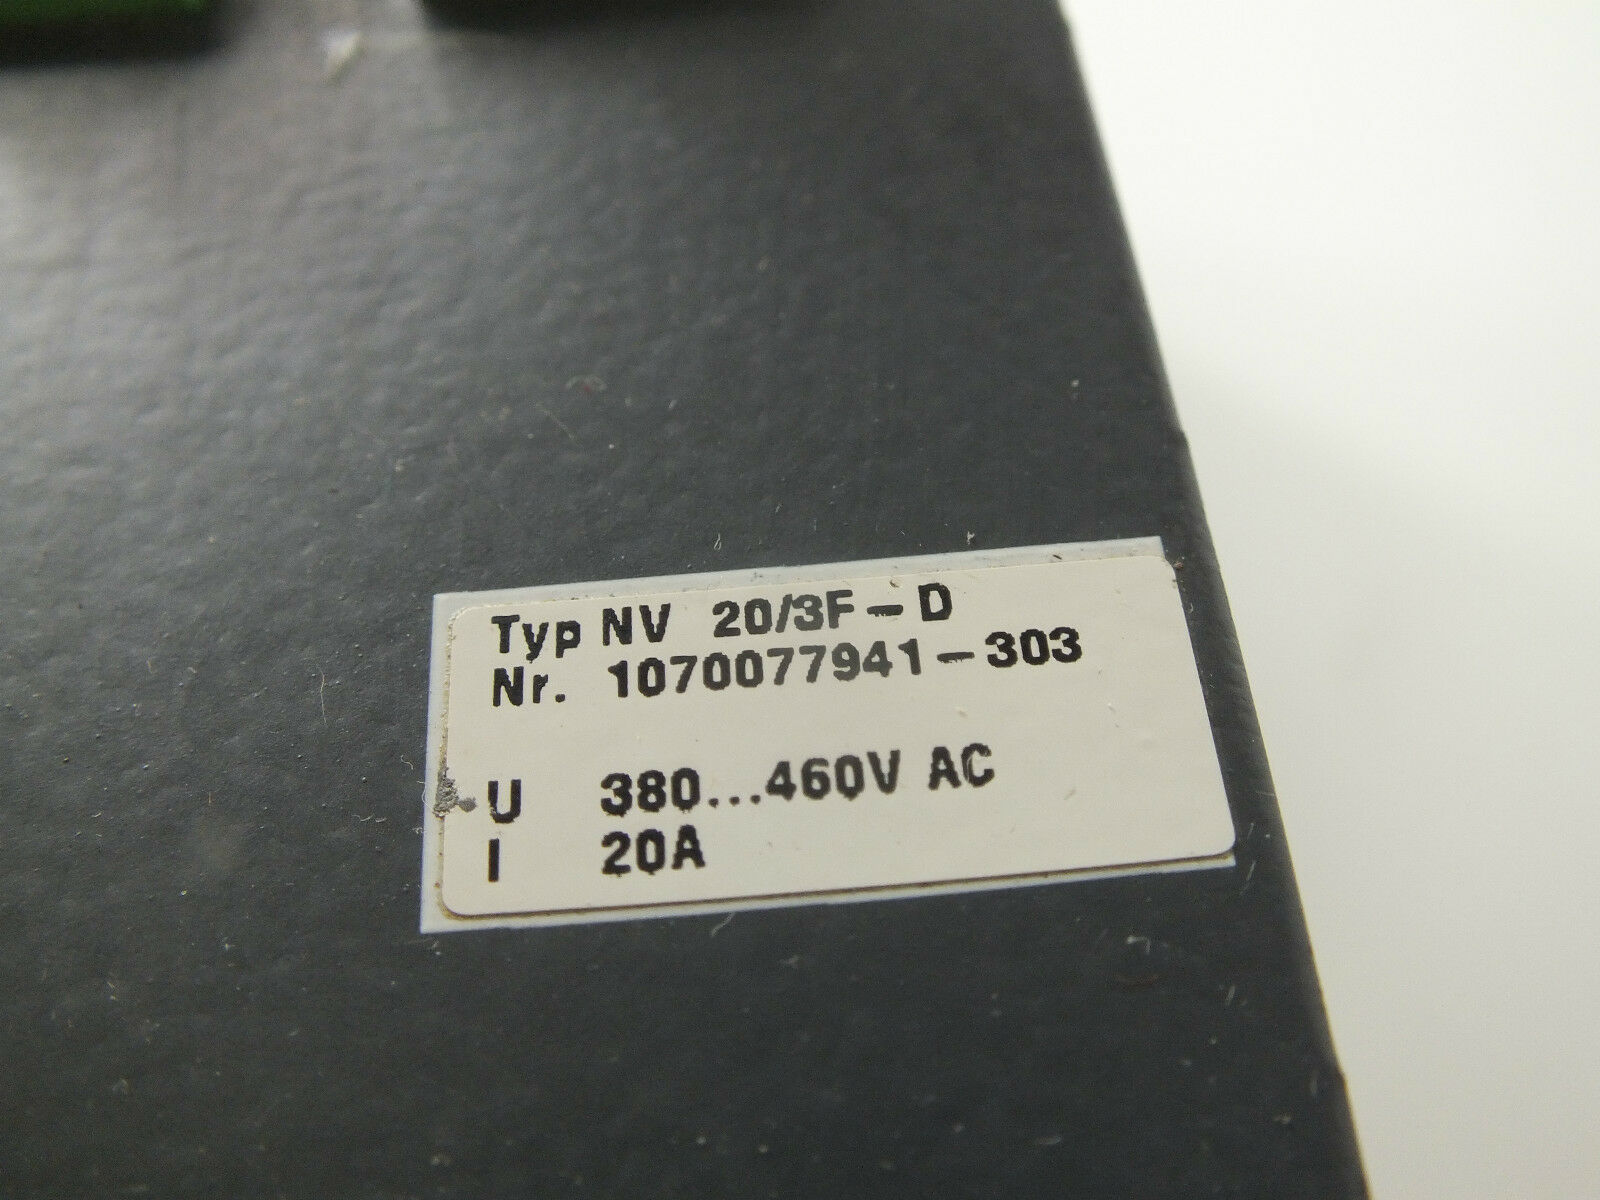 Bosch Typ NV 20/3F-D ( 1070077941-303 )